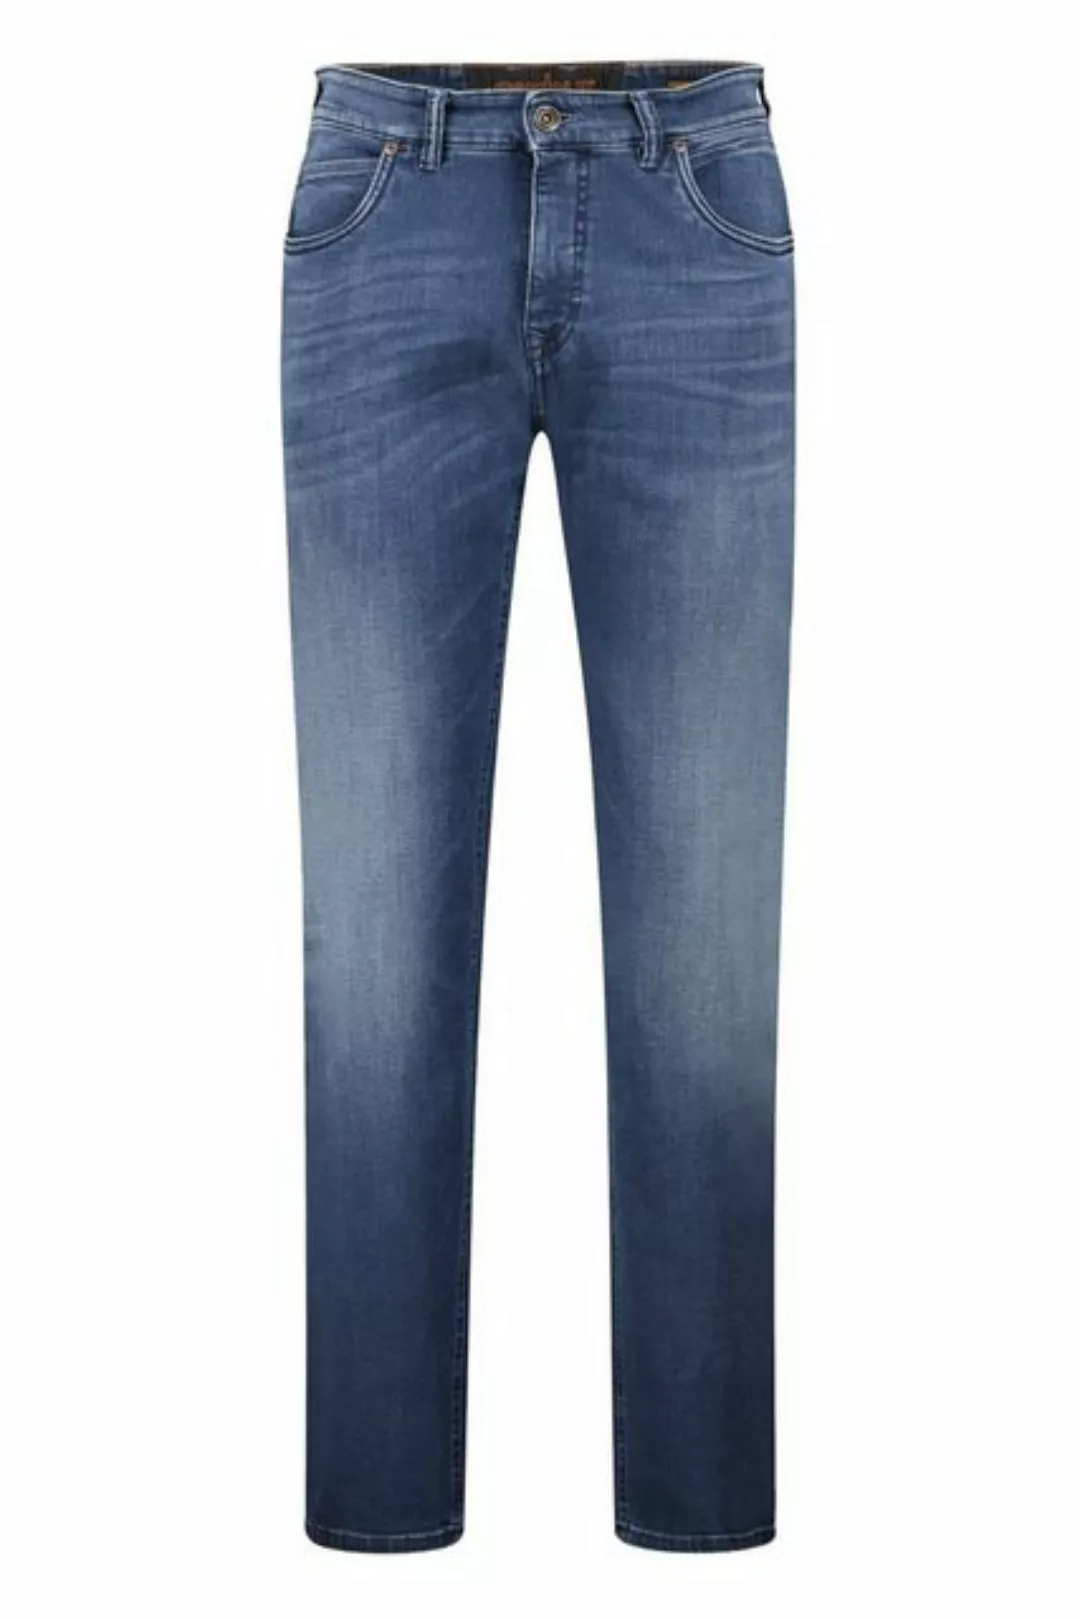 GARDEUR Jeans BENNET/471051/7167 günstig online kaufen